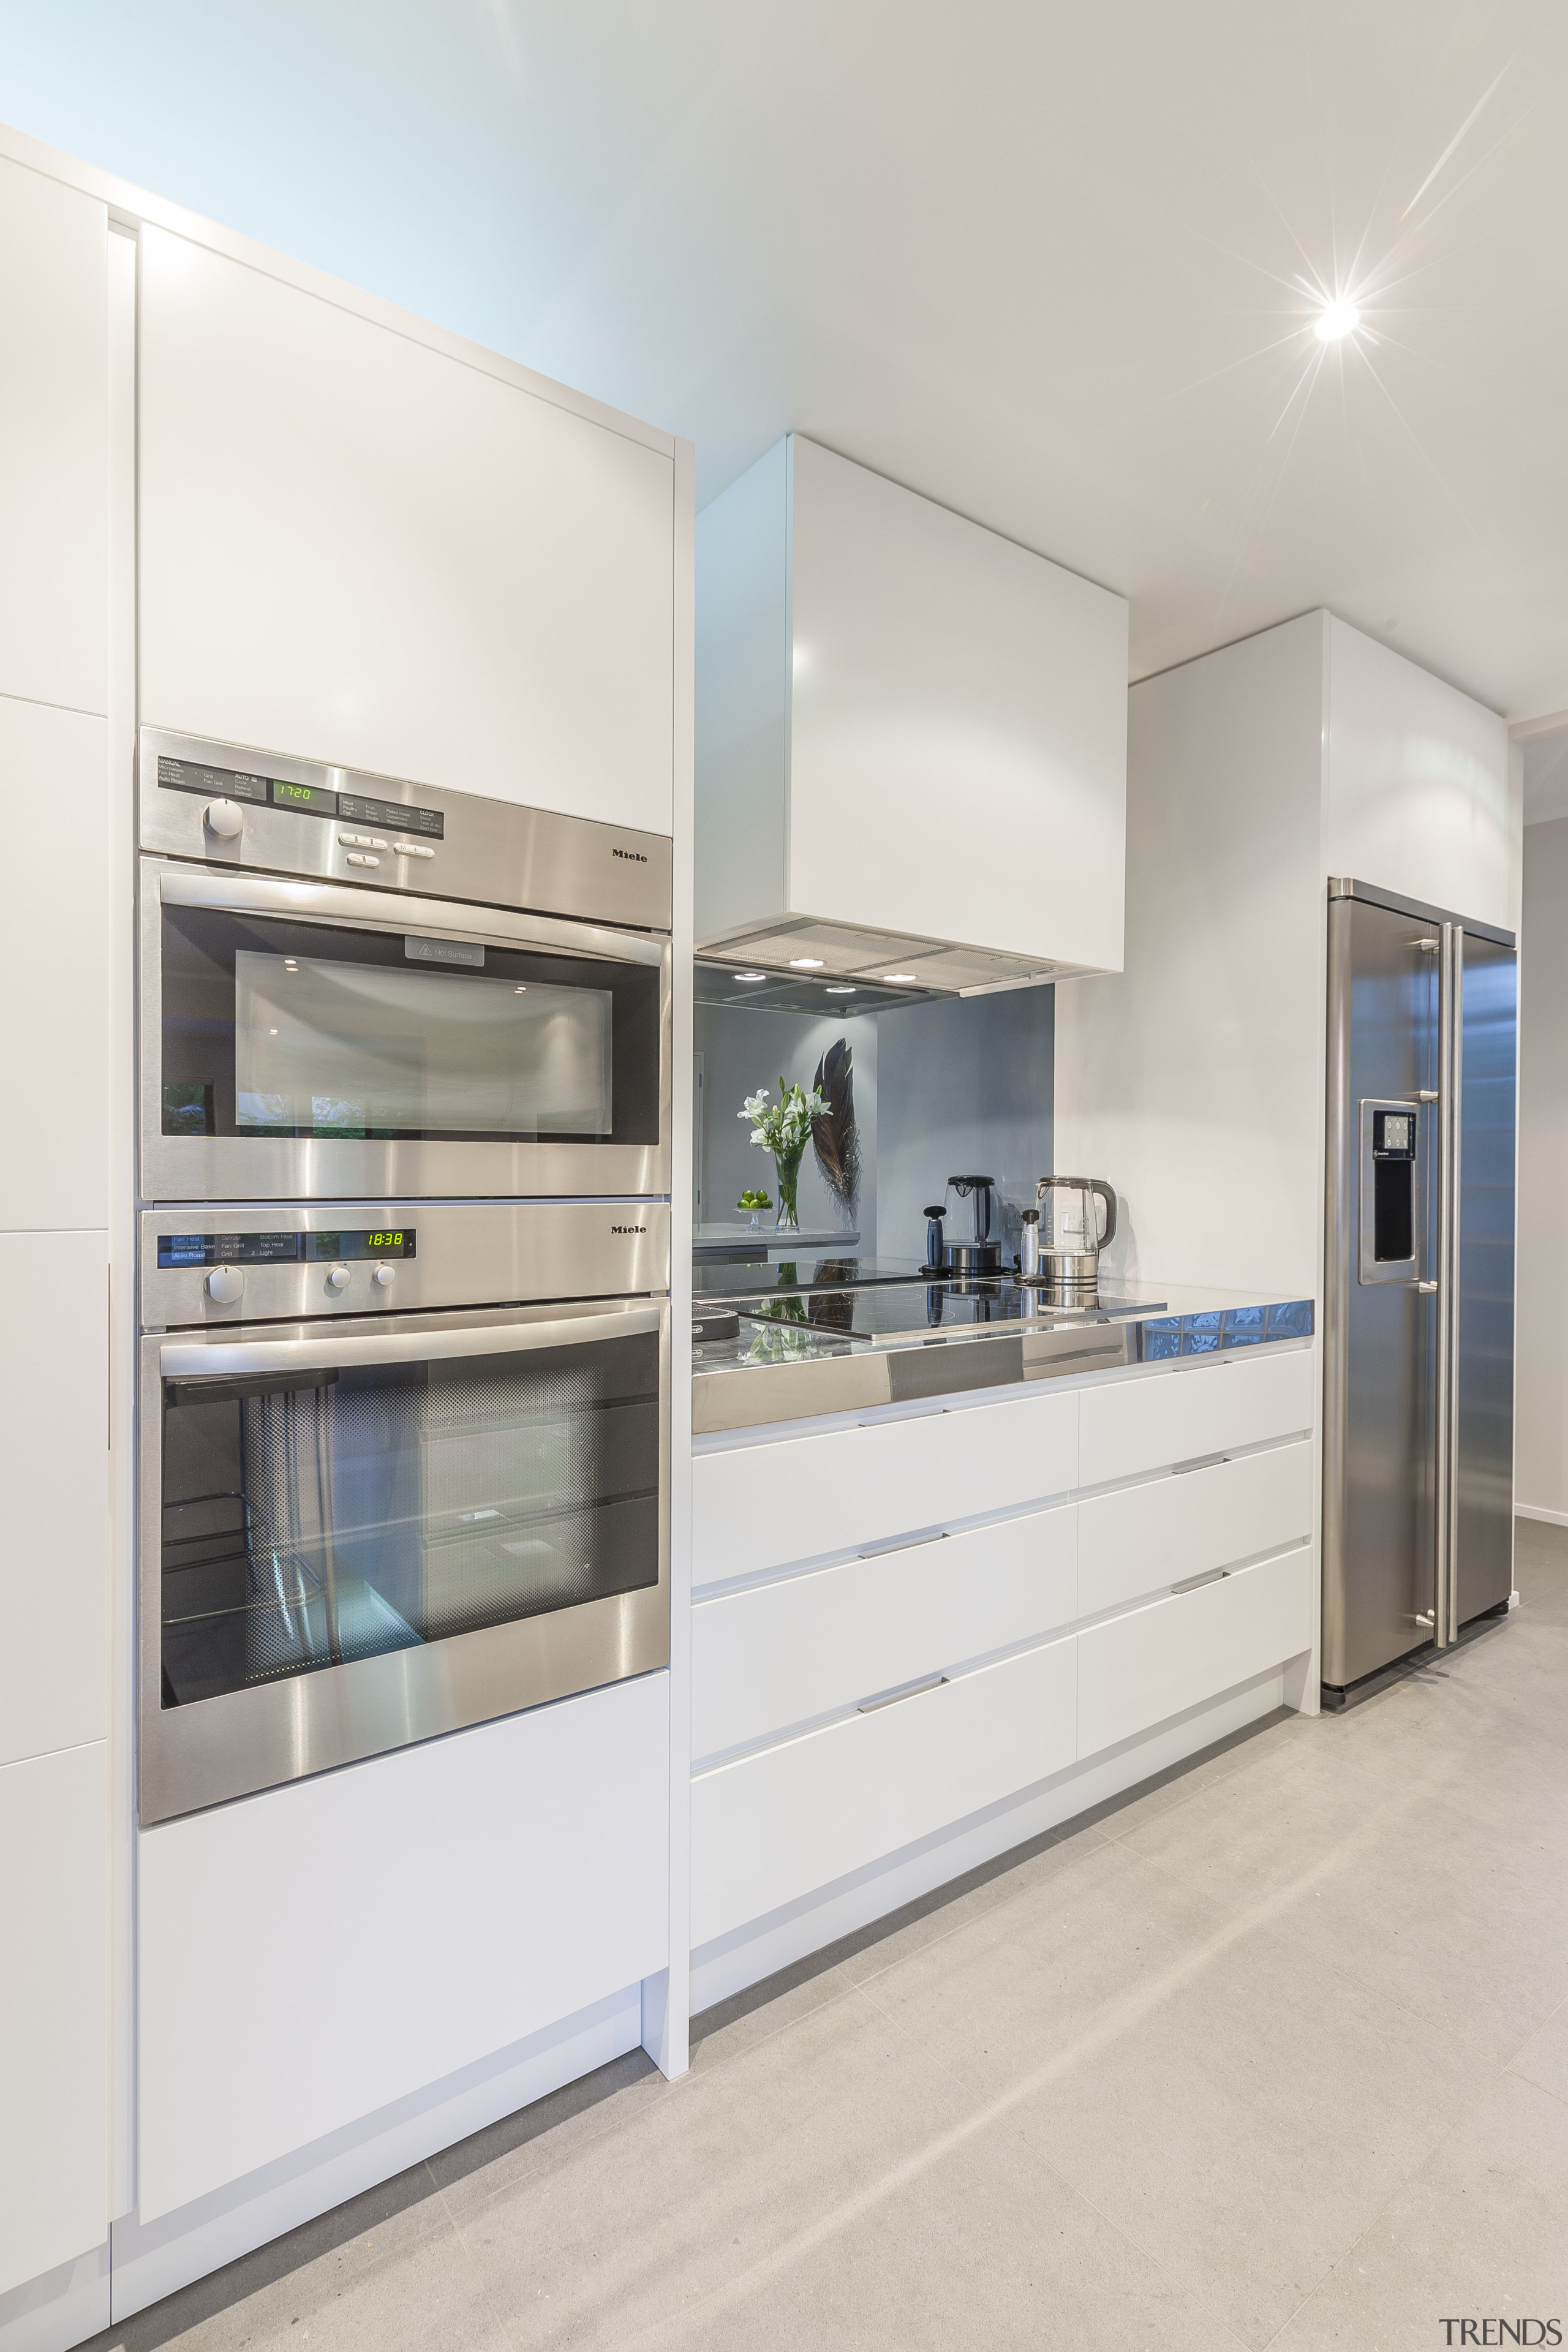 Minimalist new kitchen by Fyfe Kitchens - Minimalist countertop, home appliance, interior design, kitchen, real estate, white